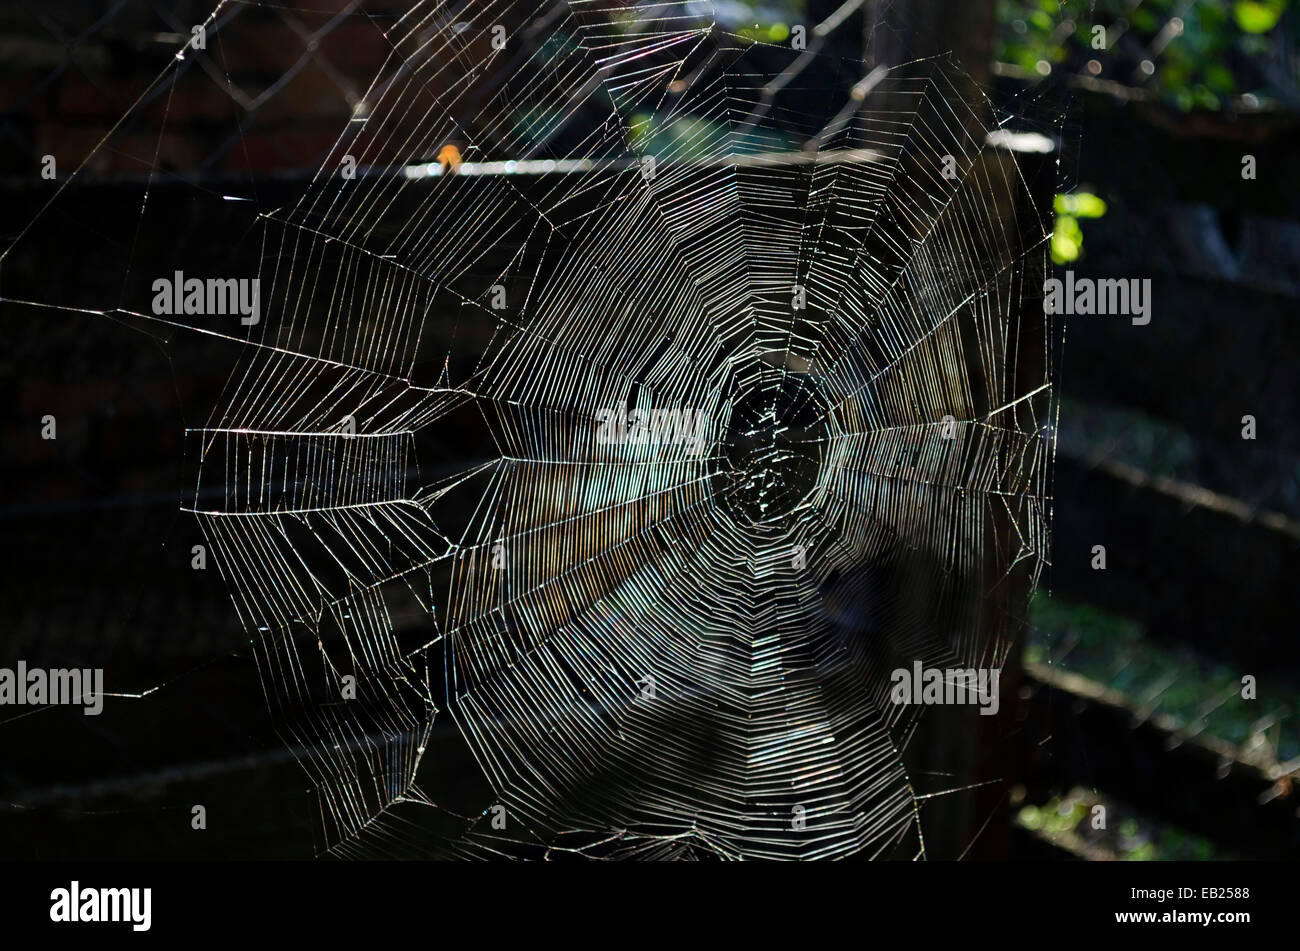 A cobweb in the dark background and sunrais Stock Photo